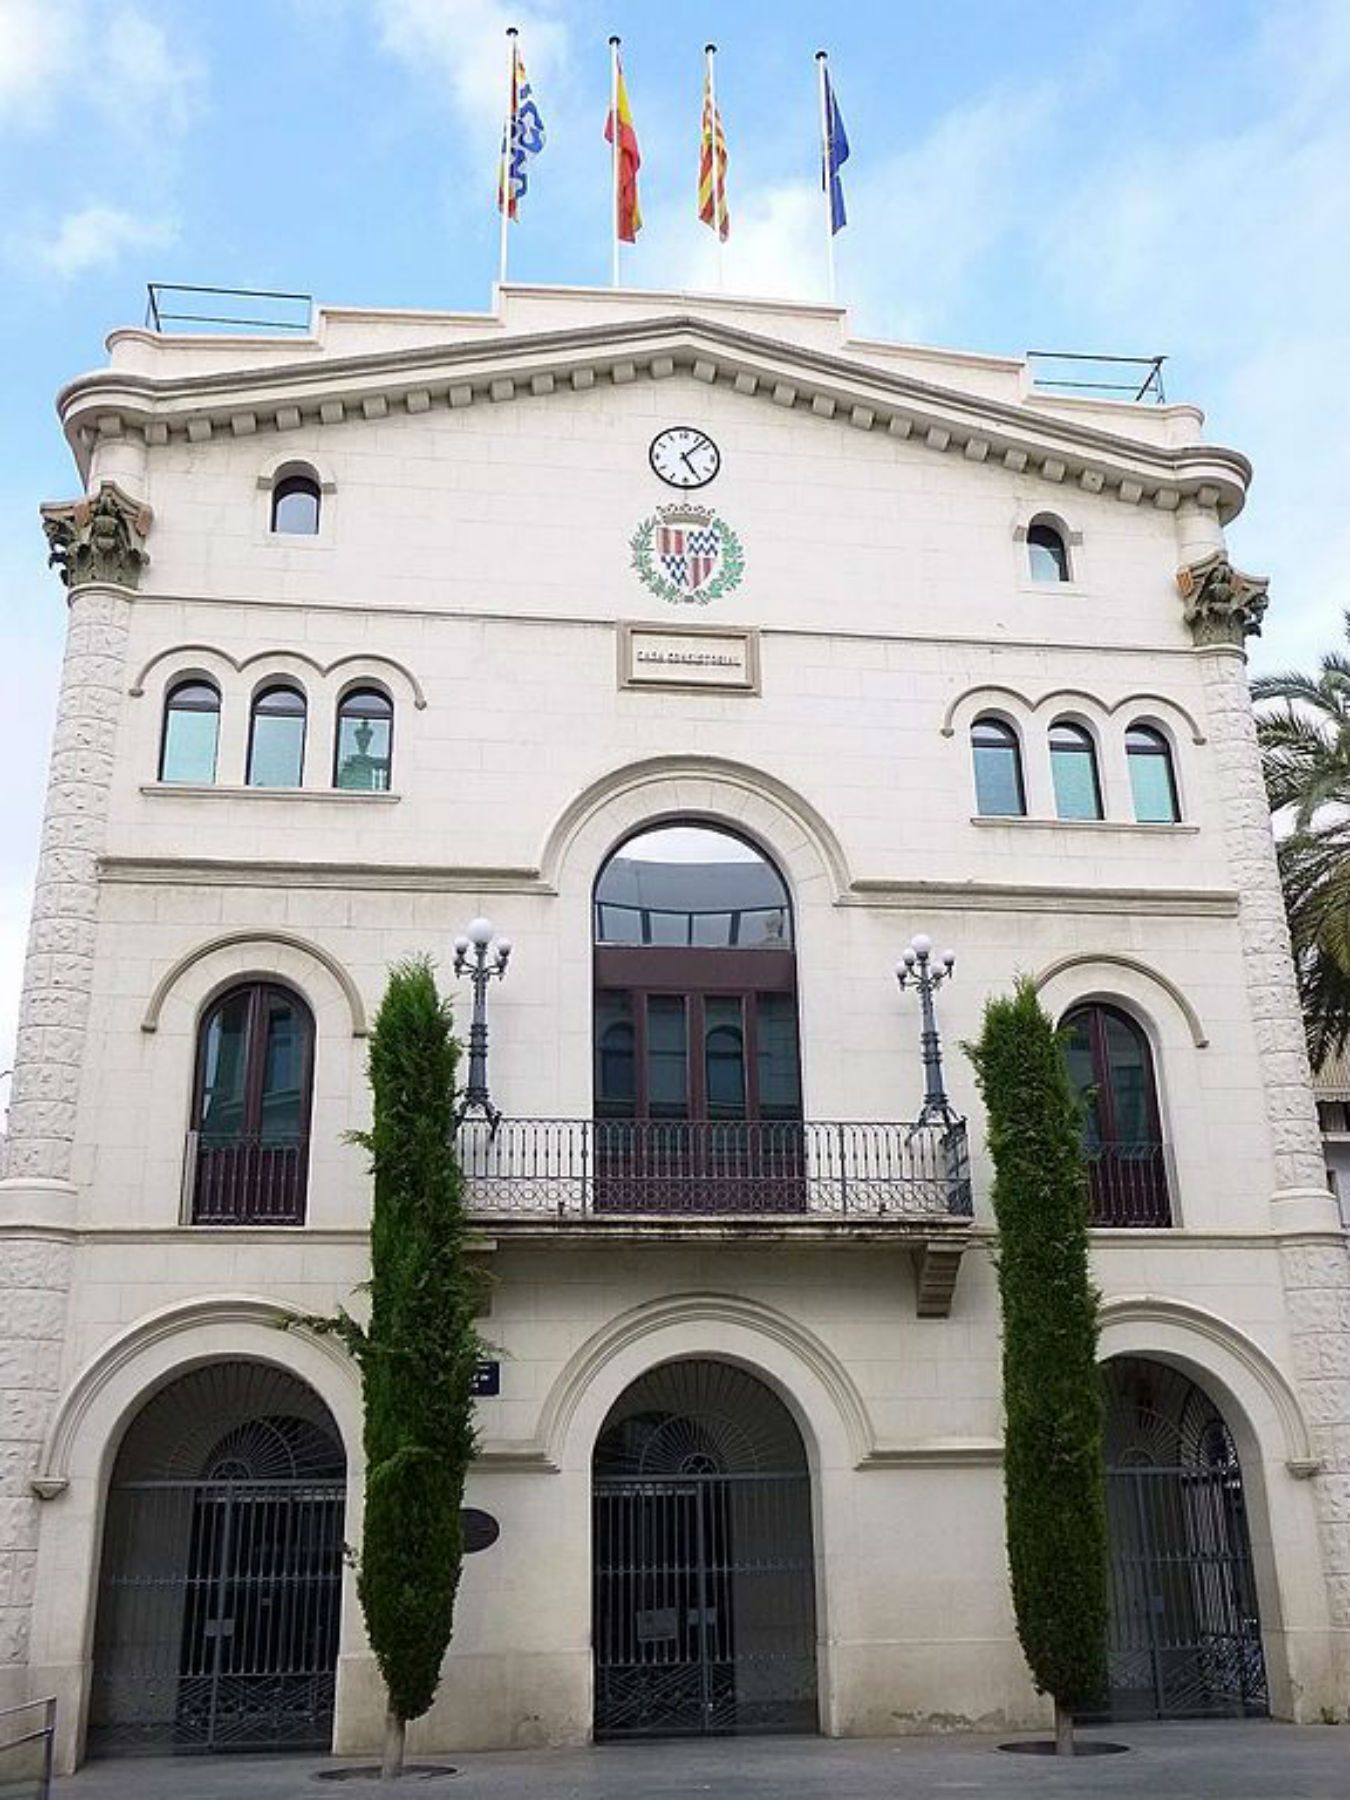 El jutge decidirà avui si l'Ajuntament de Badalona pot obrir el 12-O